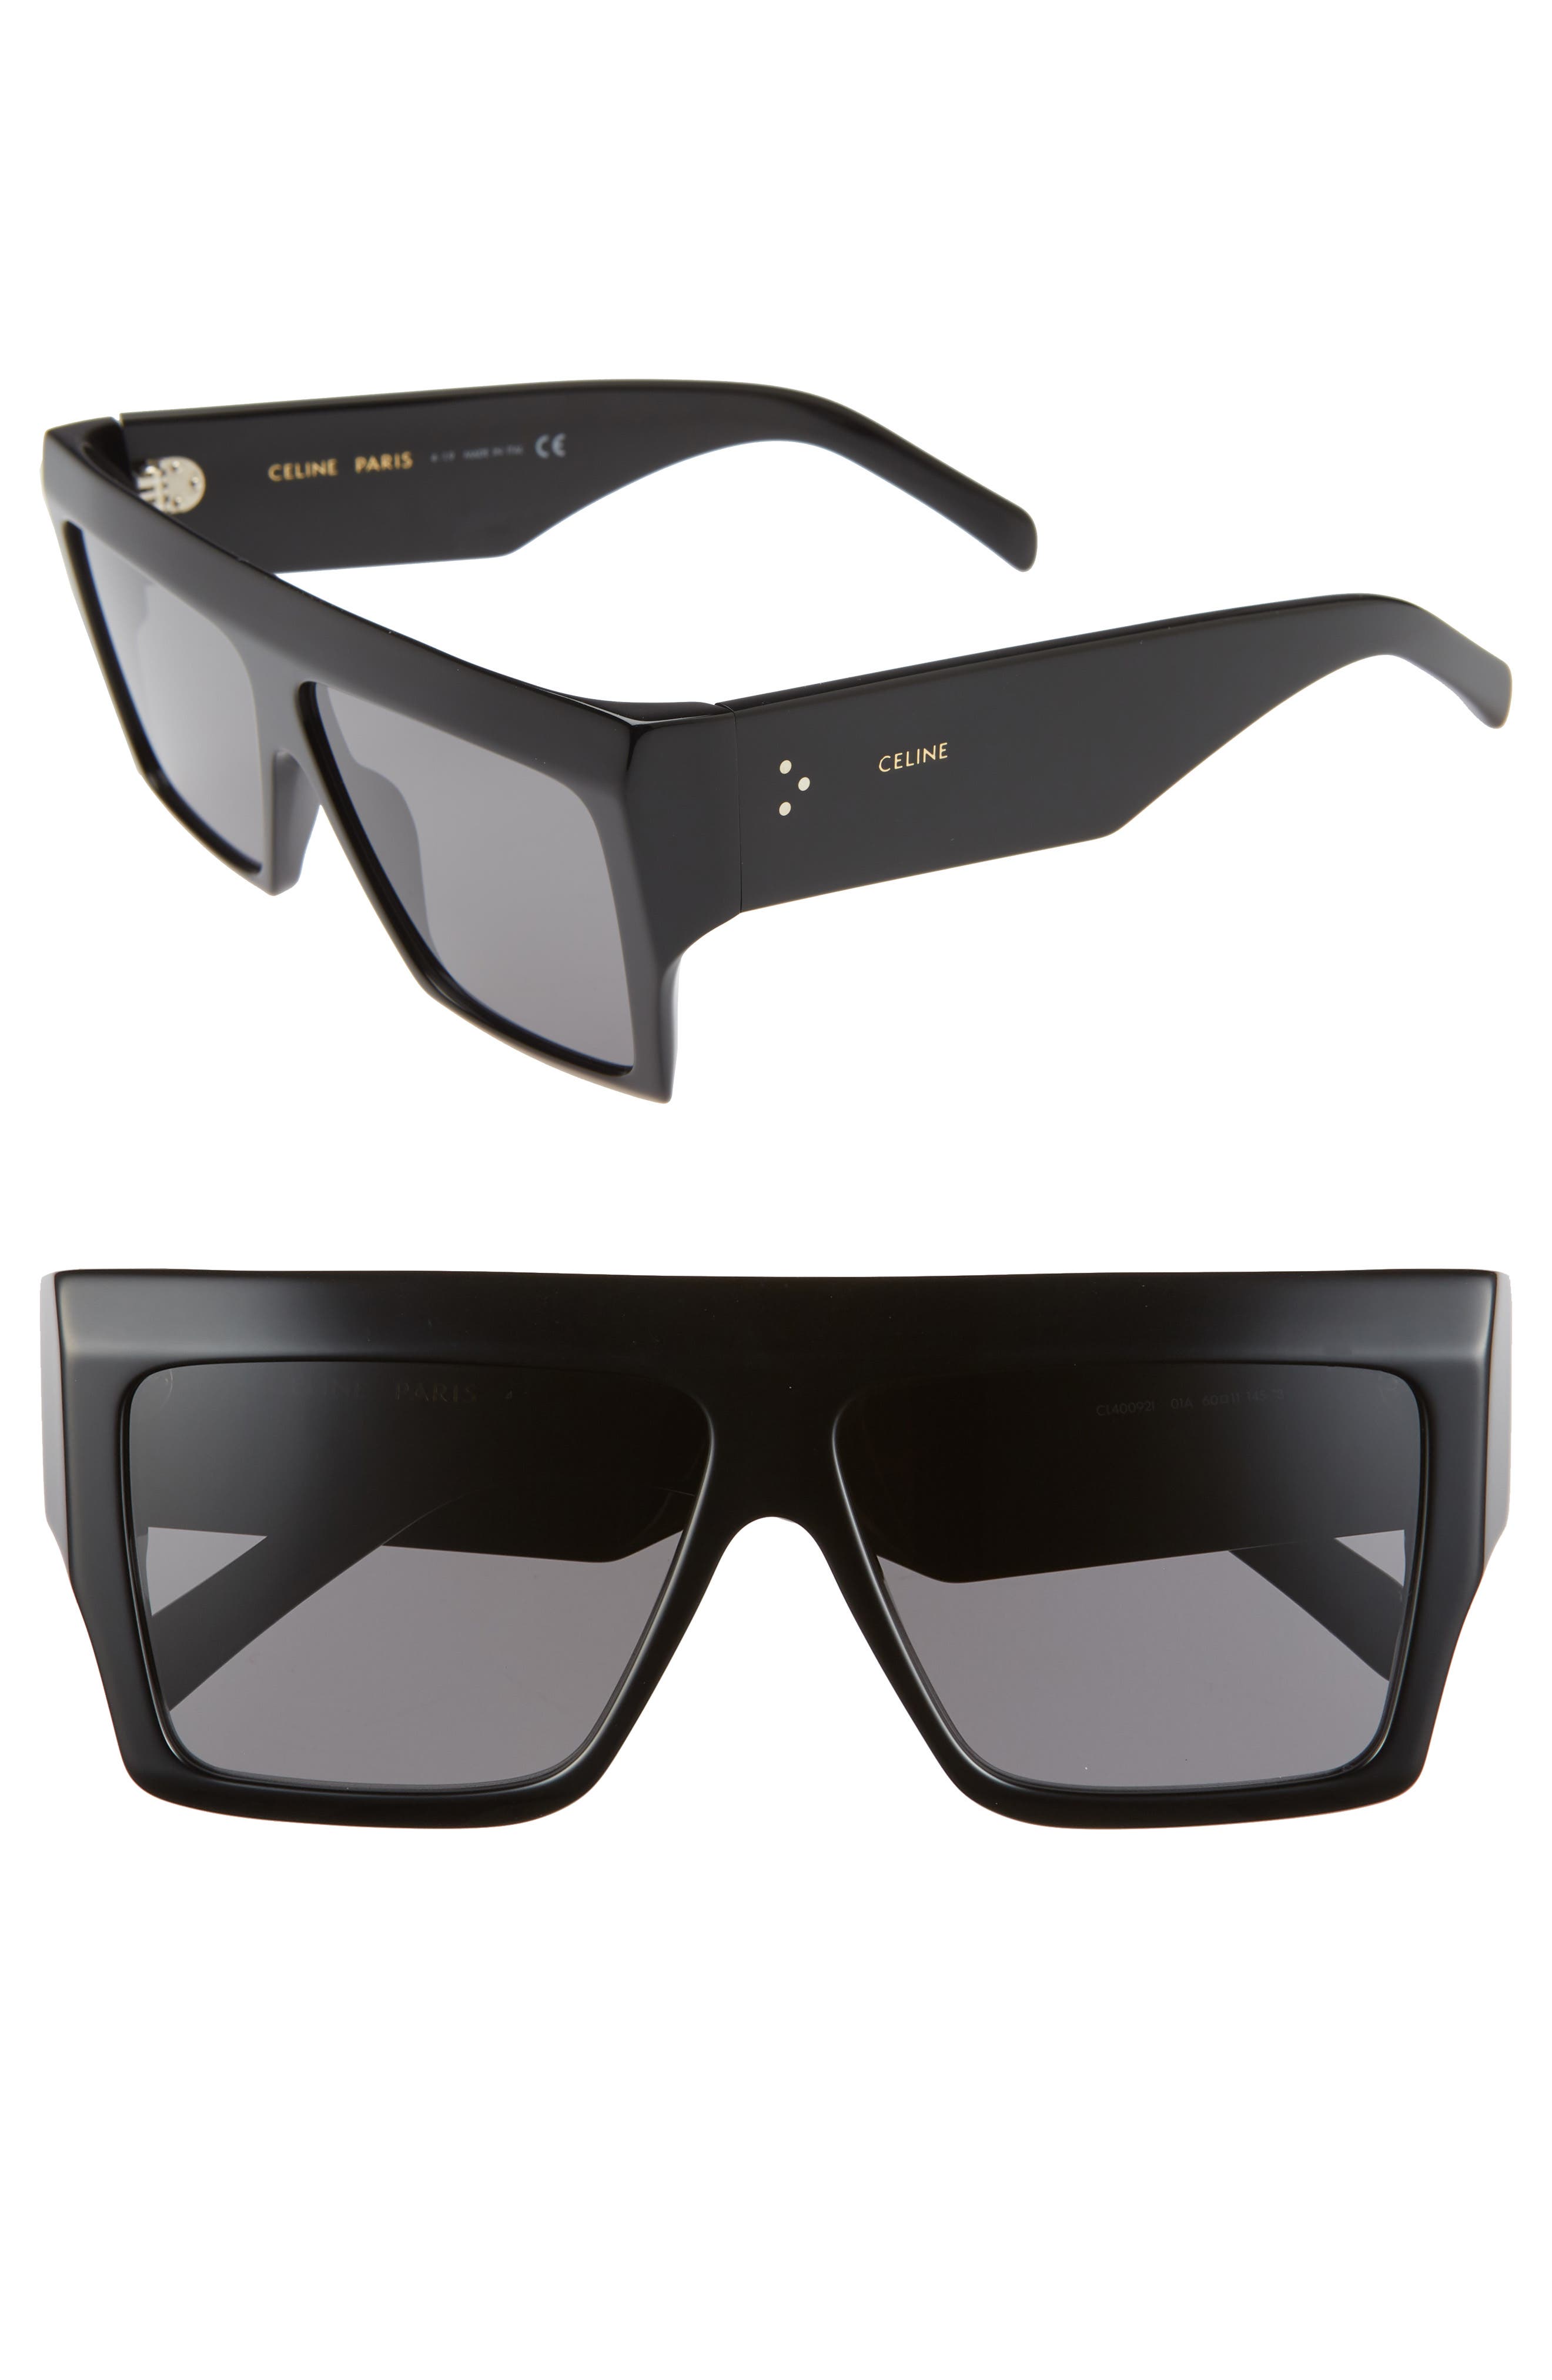 Celine Brand New celine sunglasses In black 